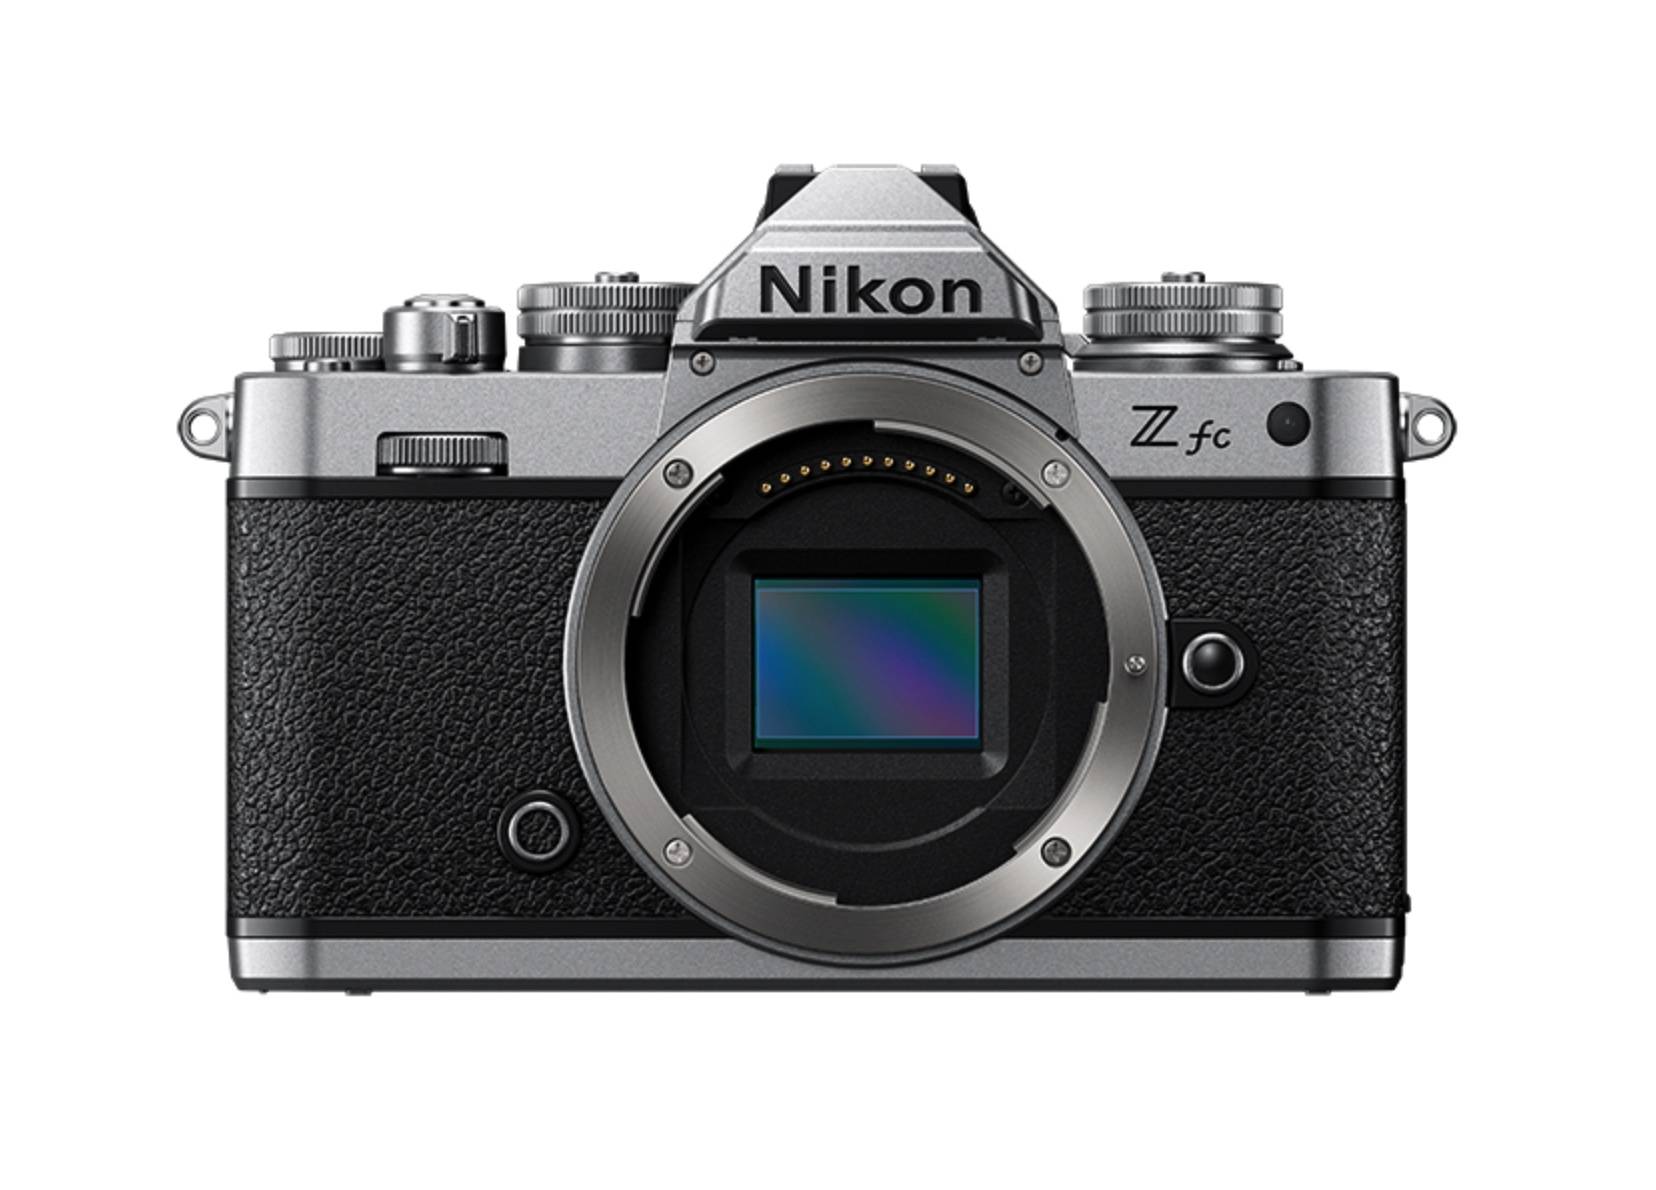 Neugravur der klassischen FM2, Nikon spiegellose Kamera Z fc veröffentlicht - iShot2021 06 29 19.47.27